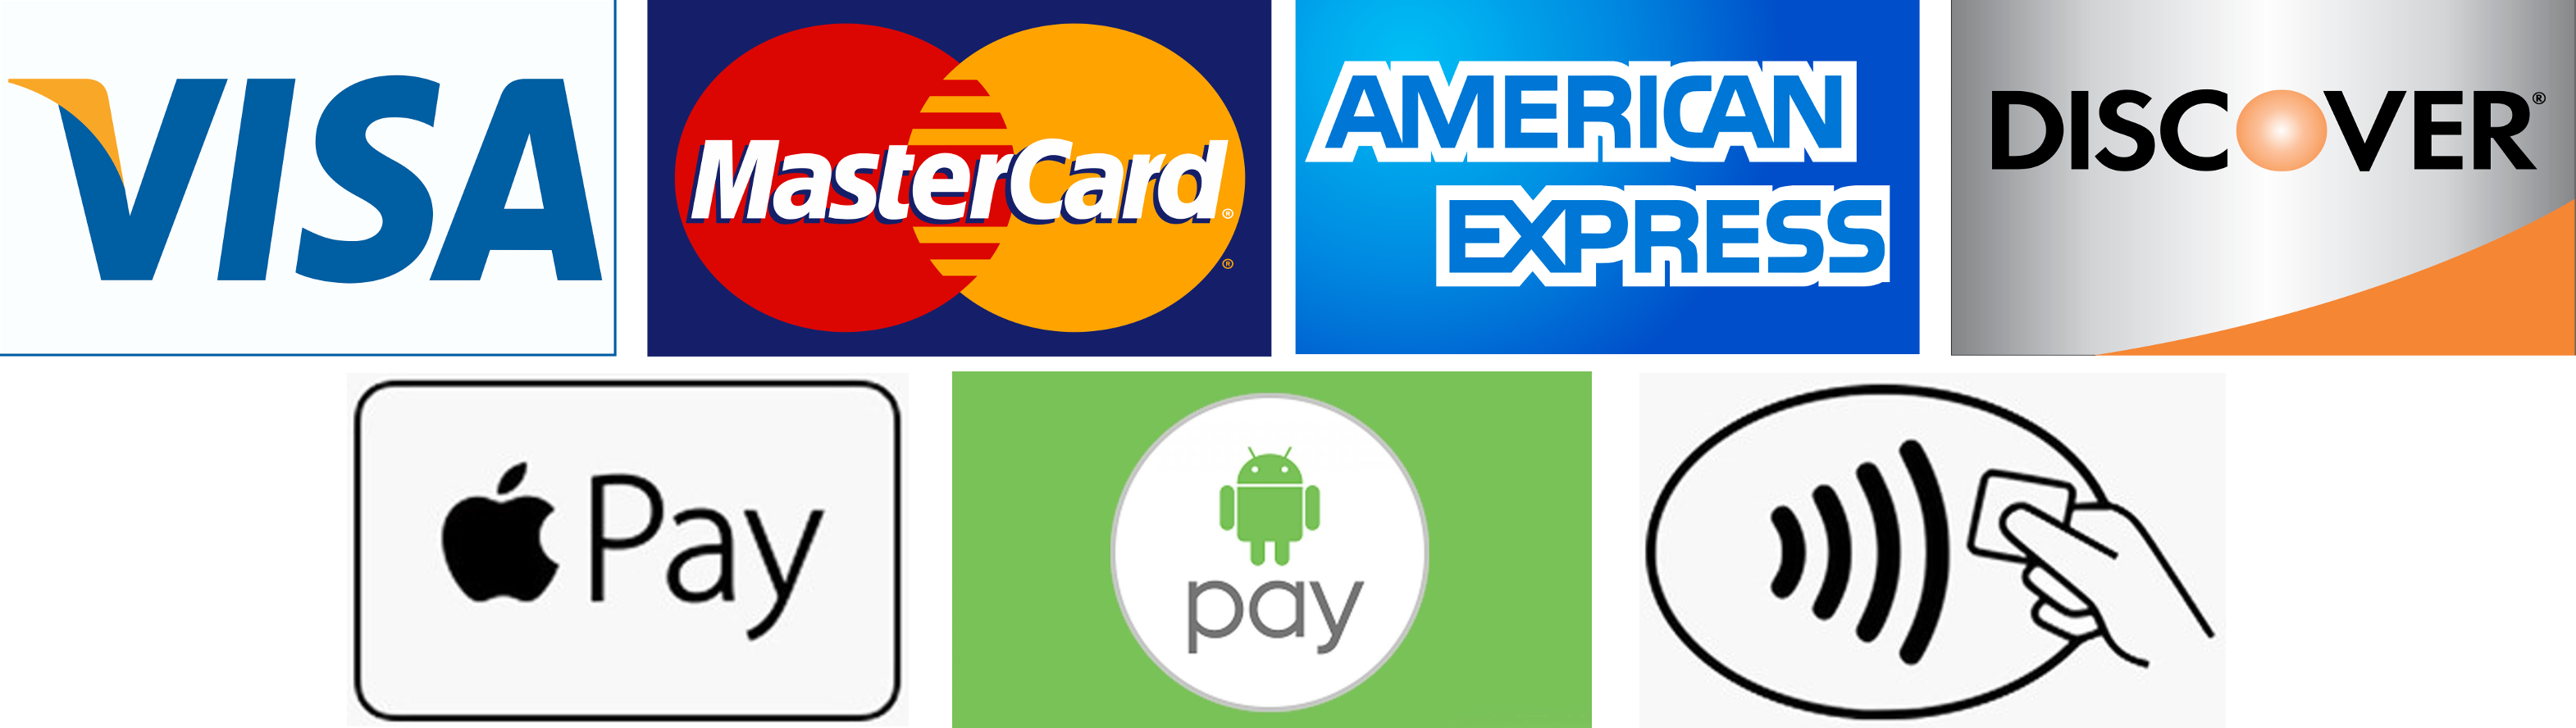 Visa Mastercard American Express Discover Vector at